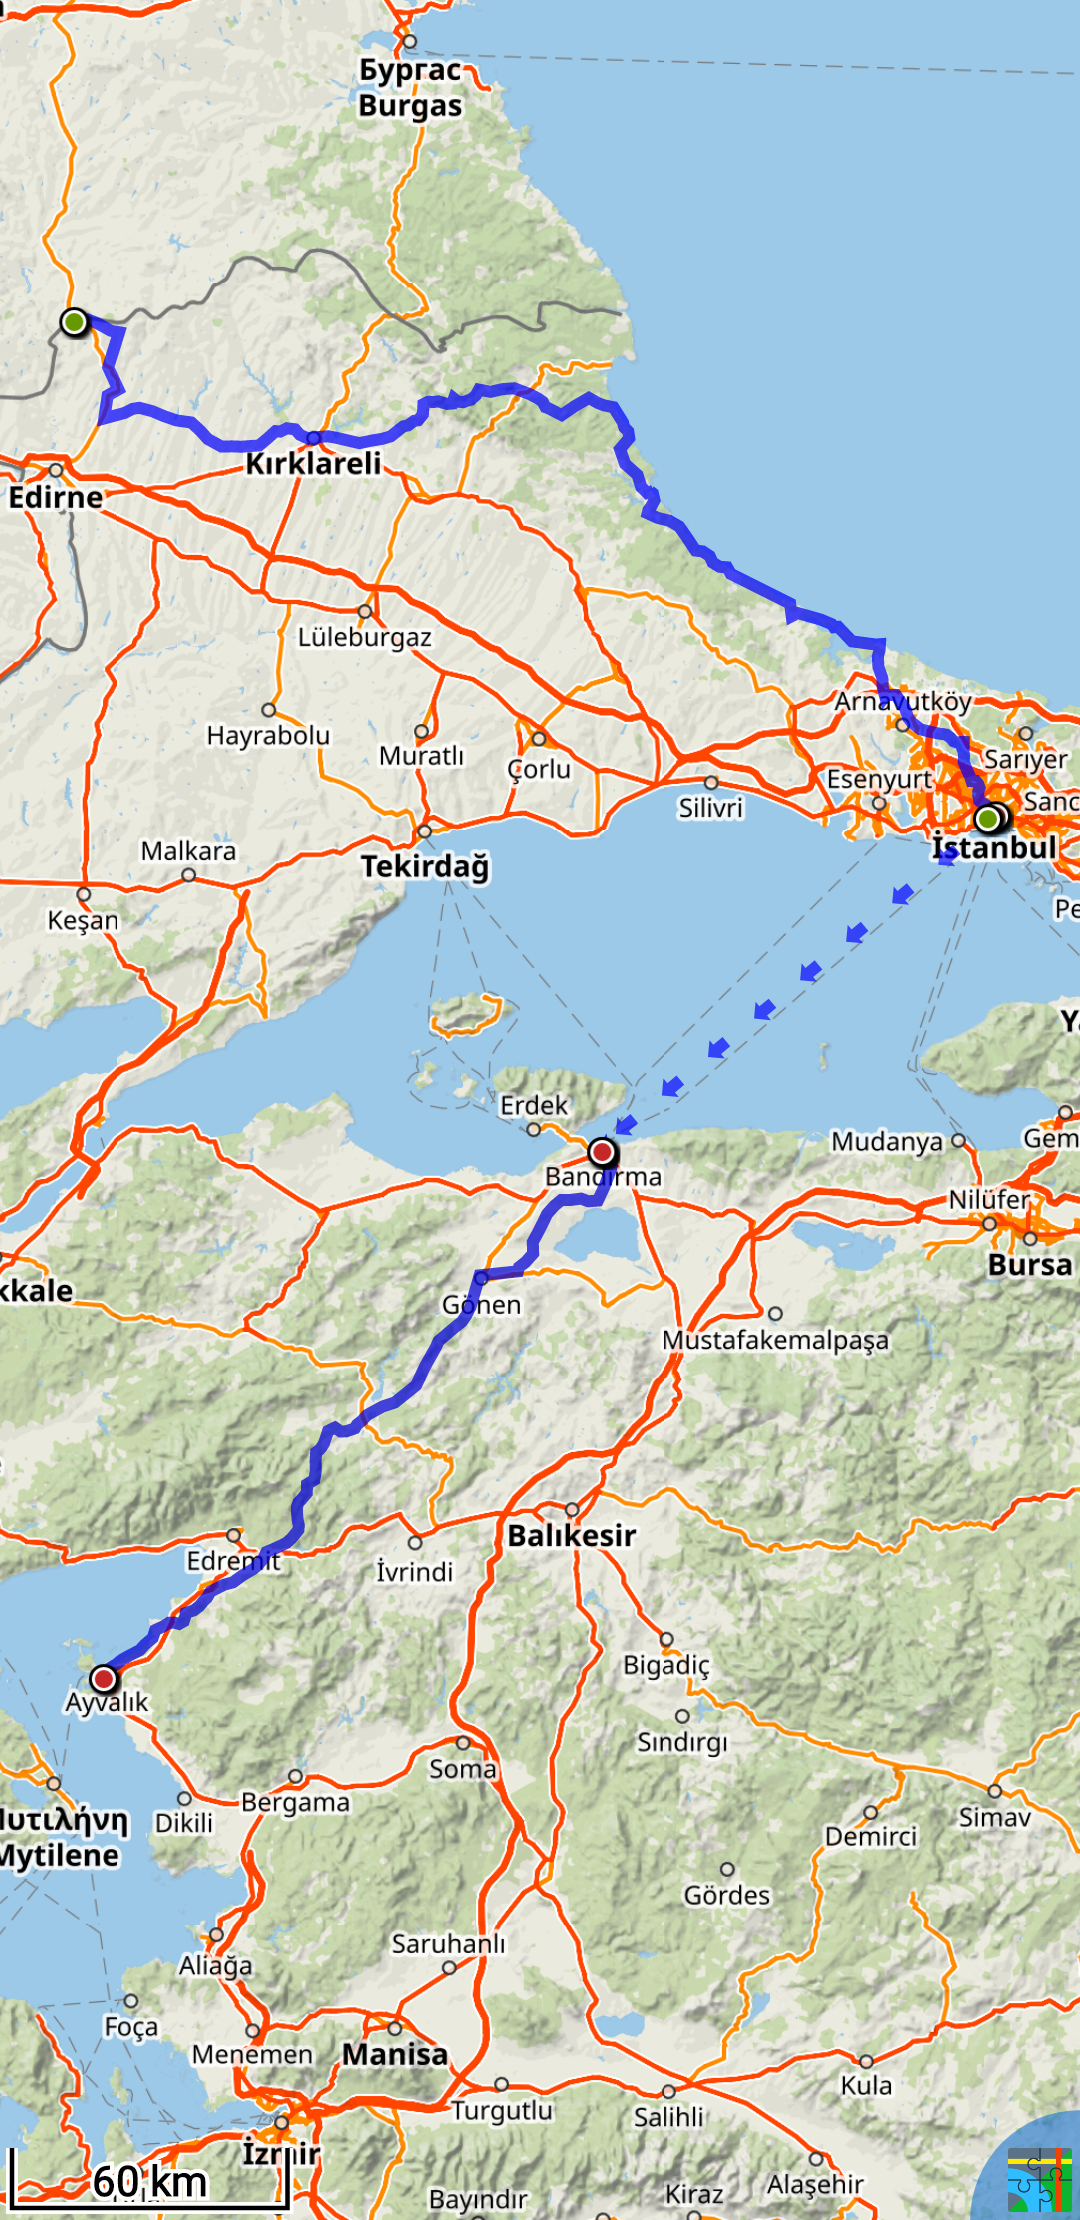 Mon itinéraire complet en Turquie. 580 km et 9000 m de D+ à pieds, 100 km en ferry. Les traces GPX sont disponibles ici :
https://link.locusmap.app/t/eeuyjz
https://link.locusmap.app/t/ddnyjo